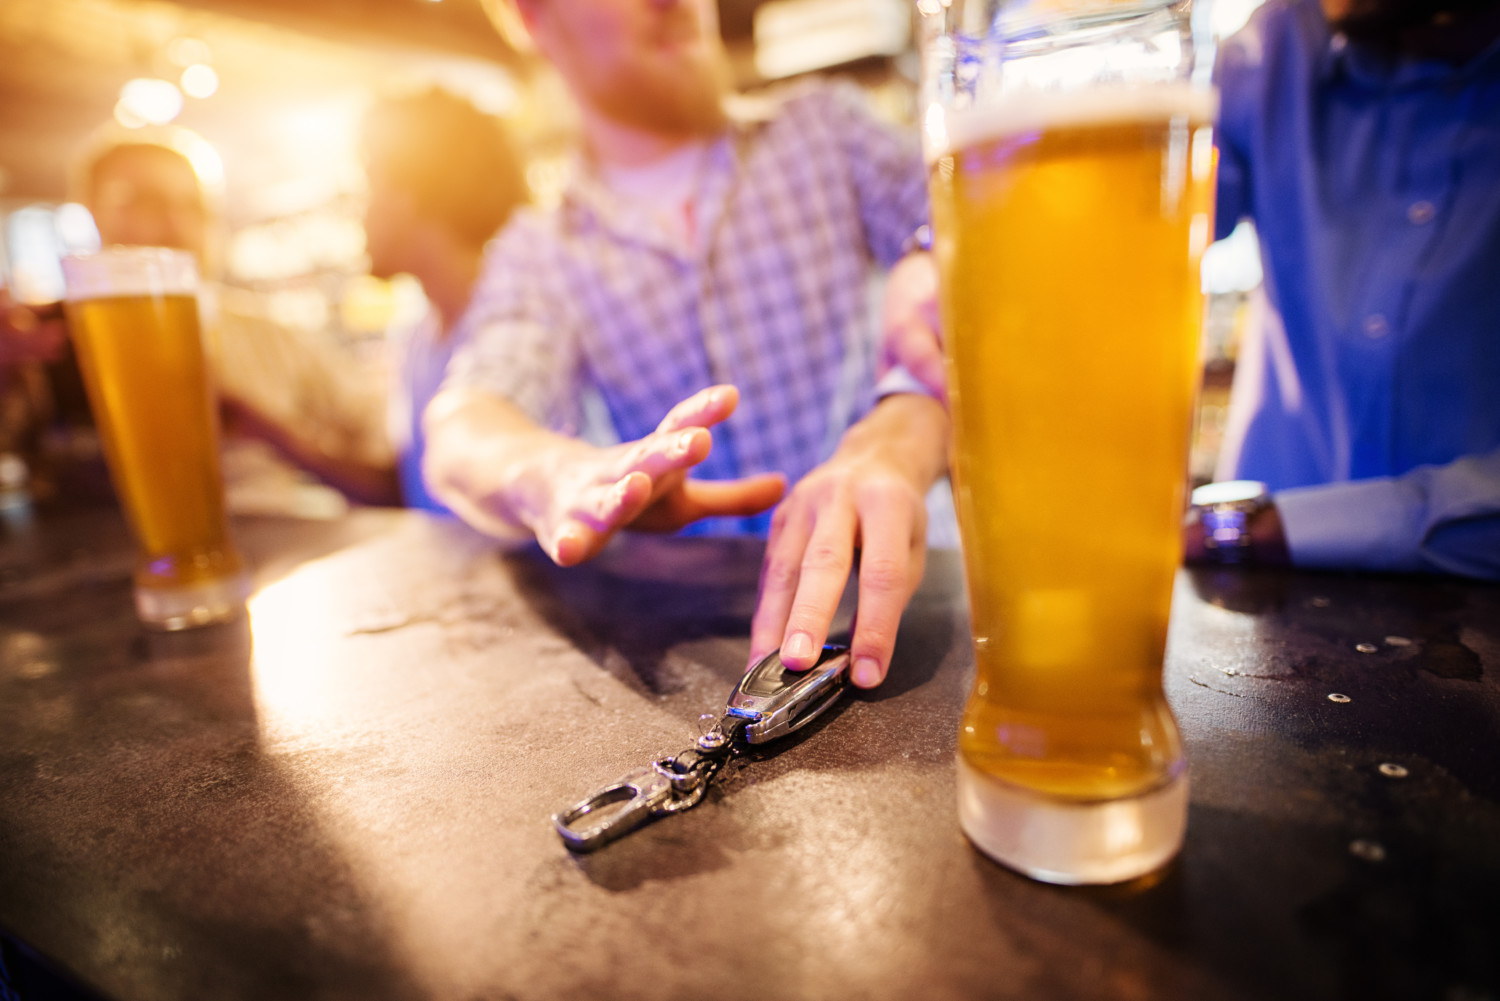   Hạn chế uống rượu bia để giảm nguy cơ bị đột quỵ  